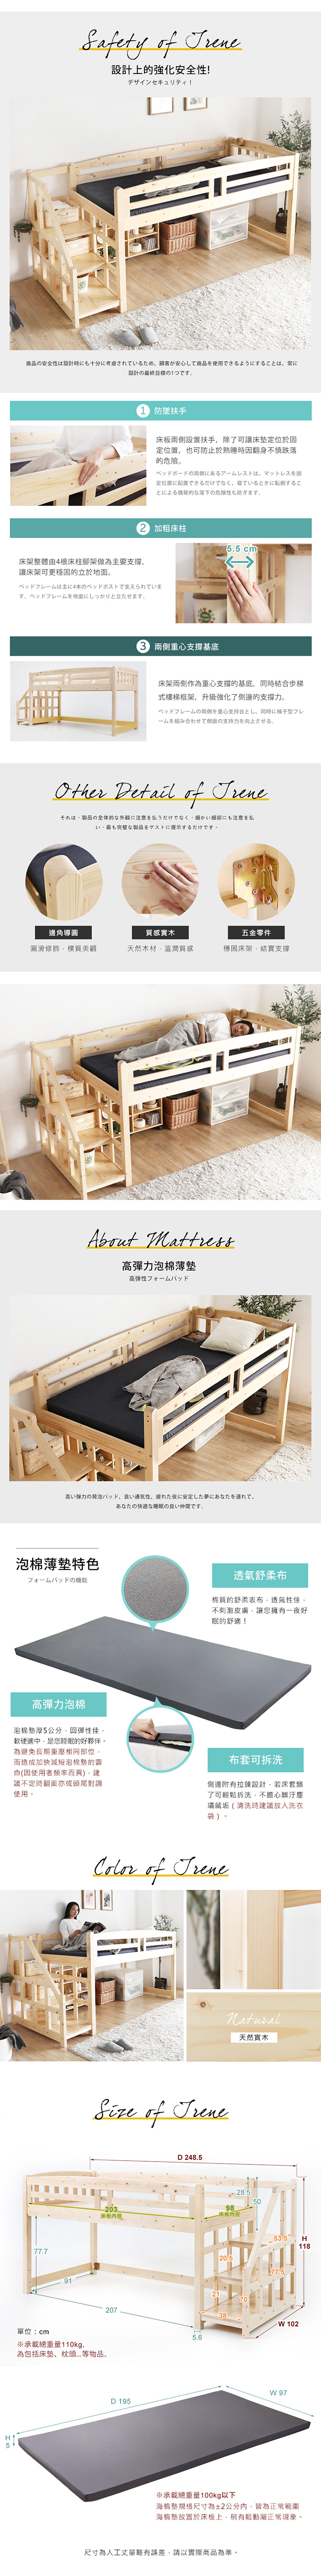 雙層床 艾琳系列日式清新雙層木床架組-2件式/H&D東稻家居